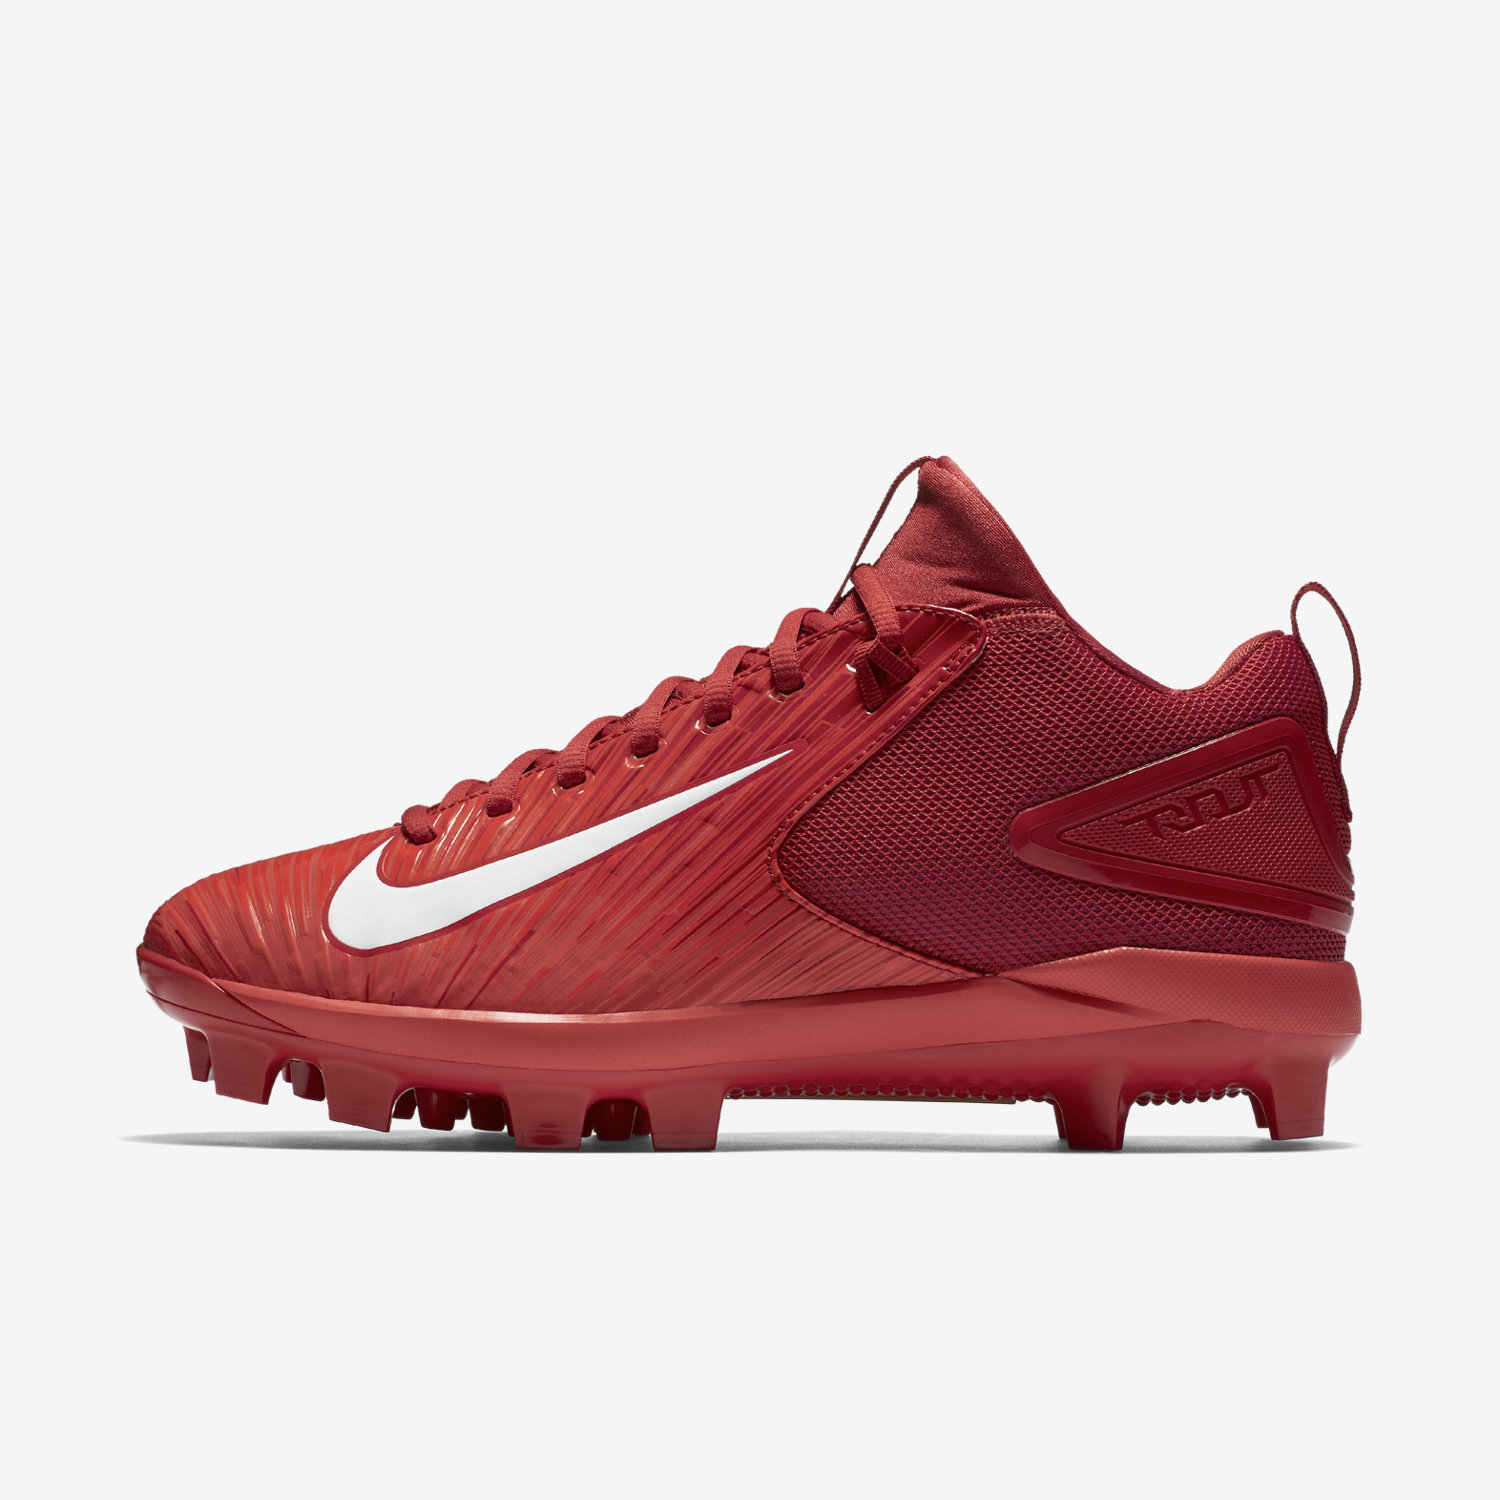 μπέιζμπολ παπουτσια ανδρικα Nike Force Trout 3 Pro MCS κοκκινα/ανοιχτο κοκκινα/ασπρα 52687377OA